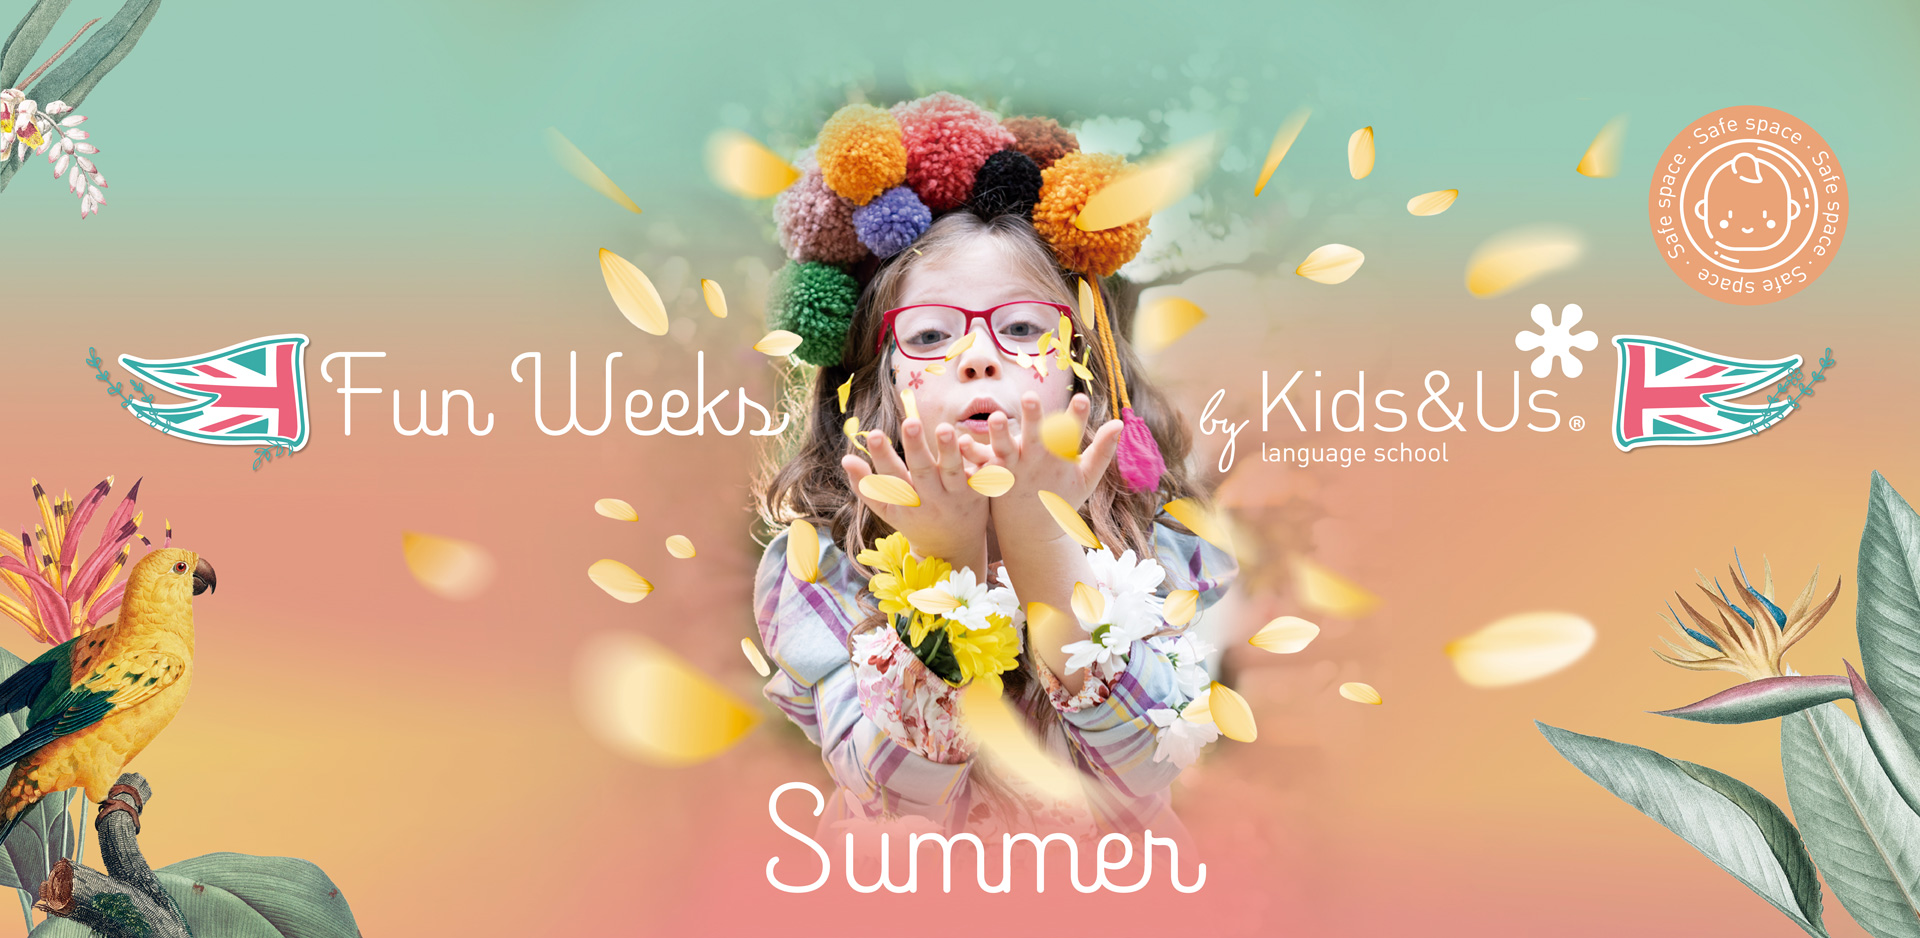 Actividades de verano para niños en Kids&Us - Campus